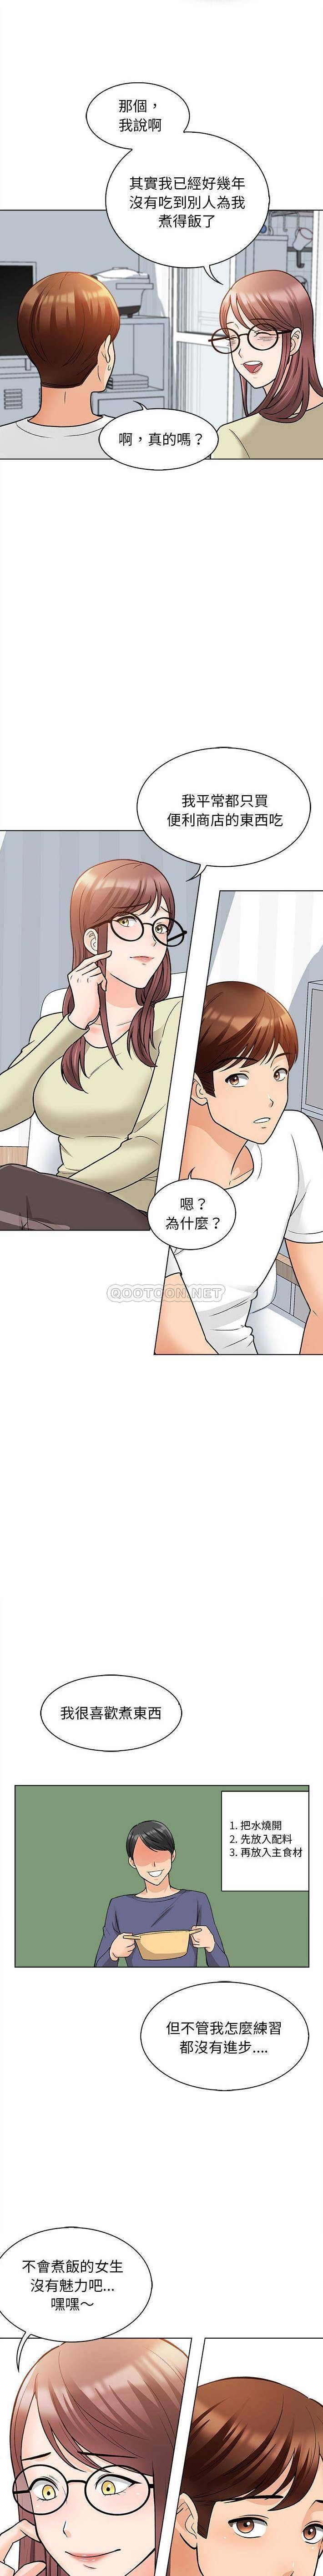 韩国污漫画 幸福公寓 第11话 10